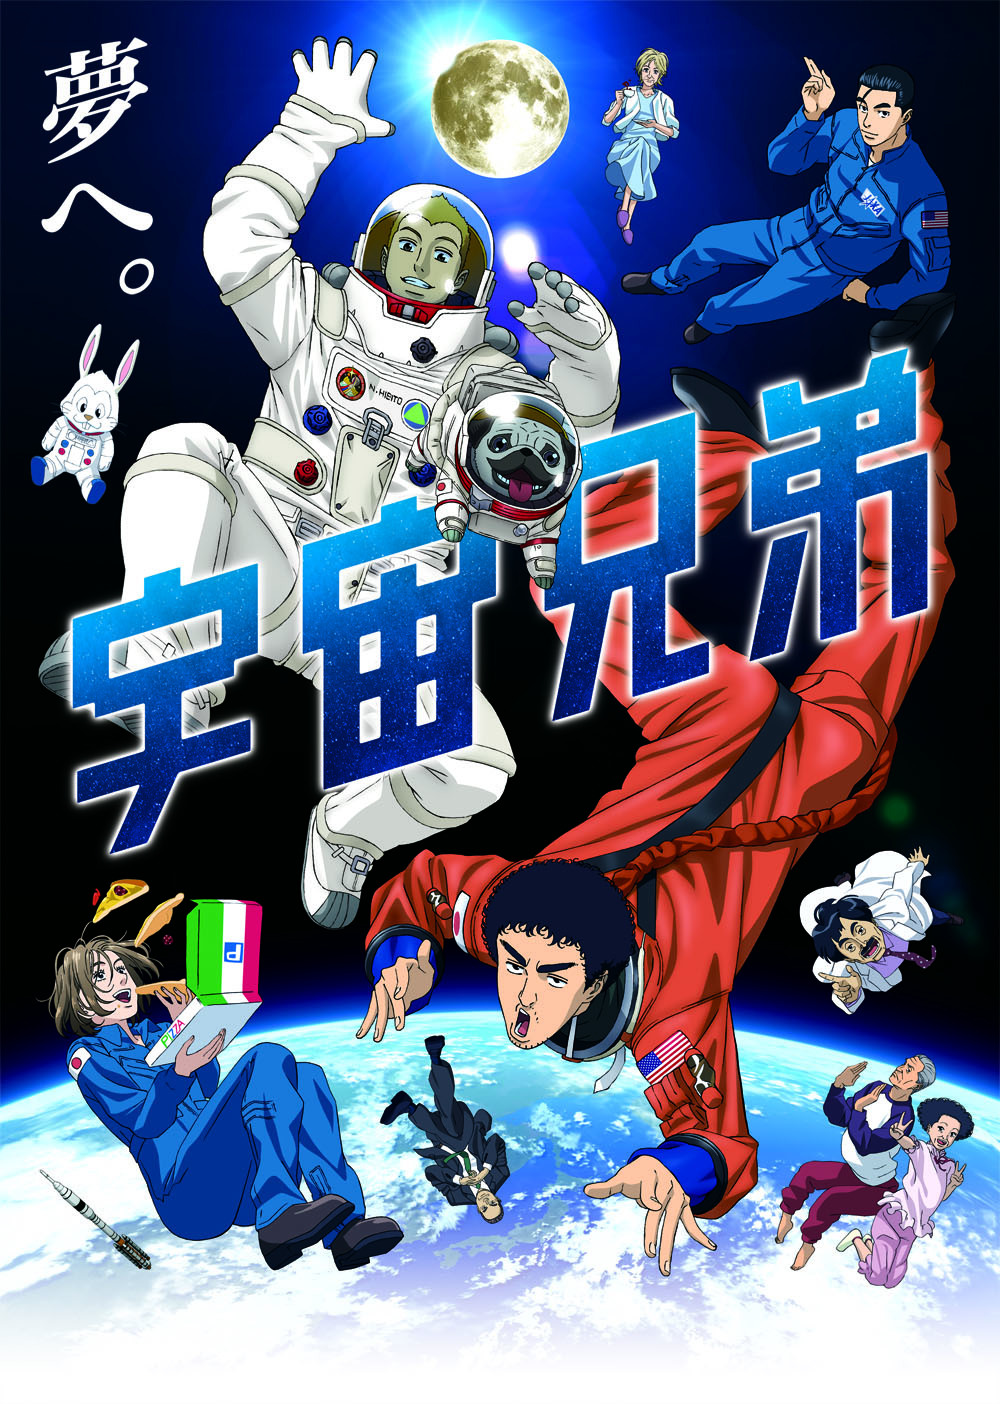 宇宙兄弟 Space Brothers Manga Japaneseclass Jp